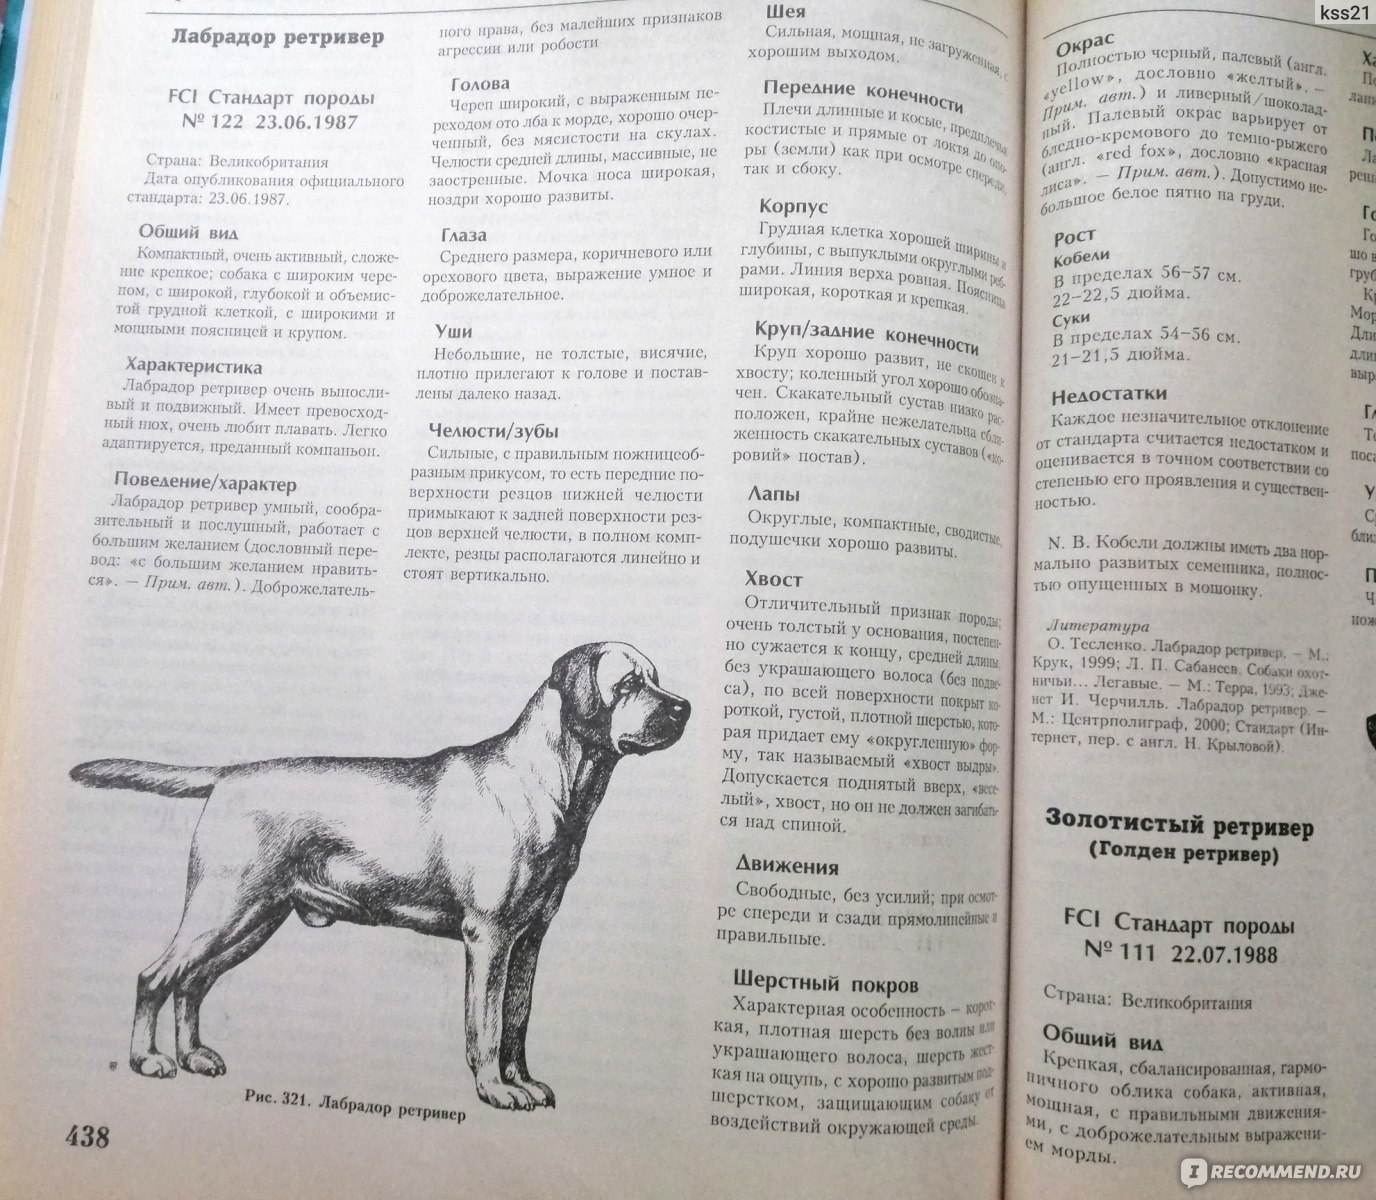 Порода собак ховаварт: описание внешнего вида, правила содержания и дрессировки, питомник щенков на урале